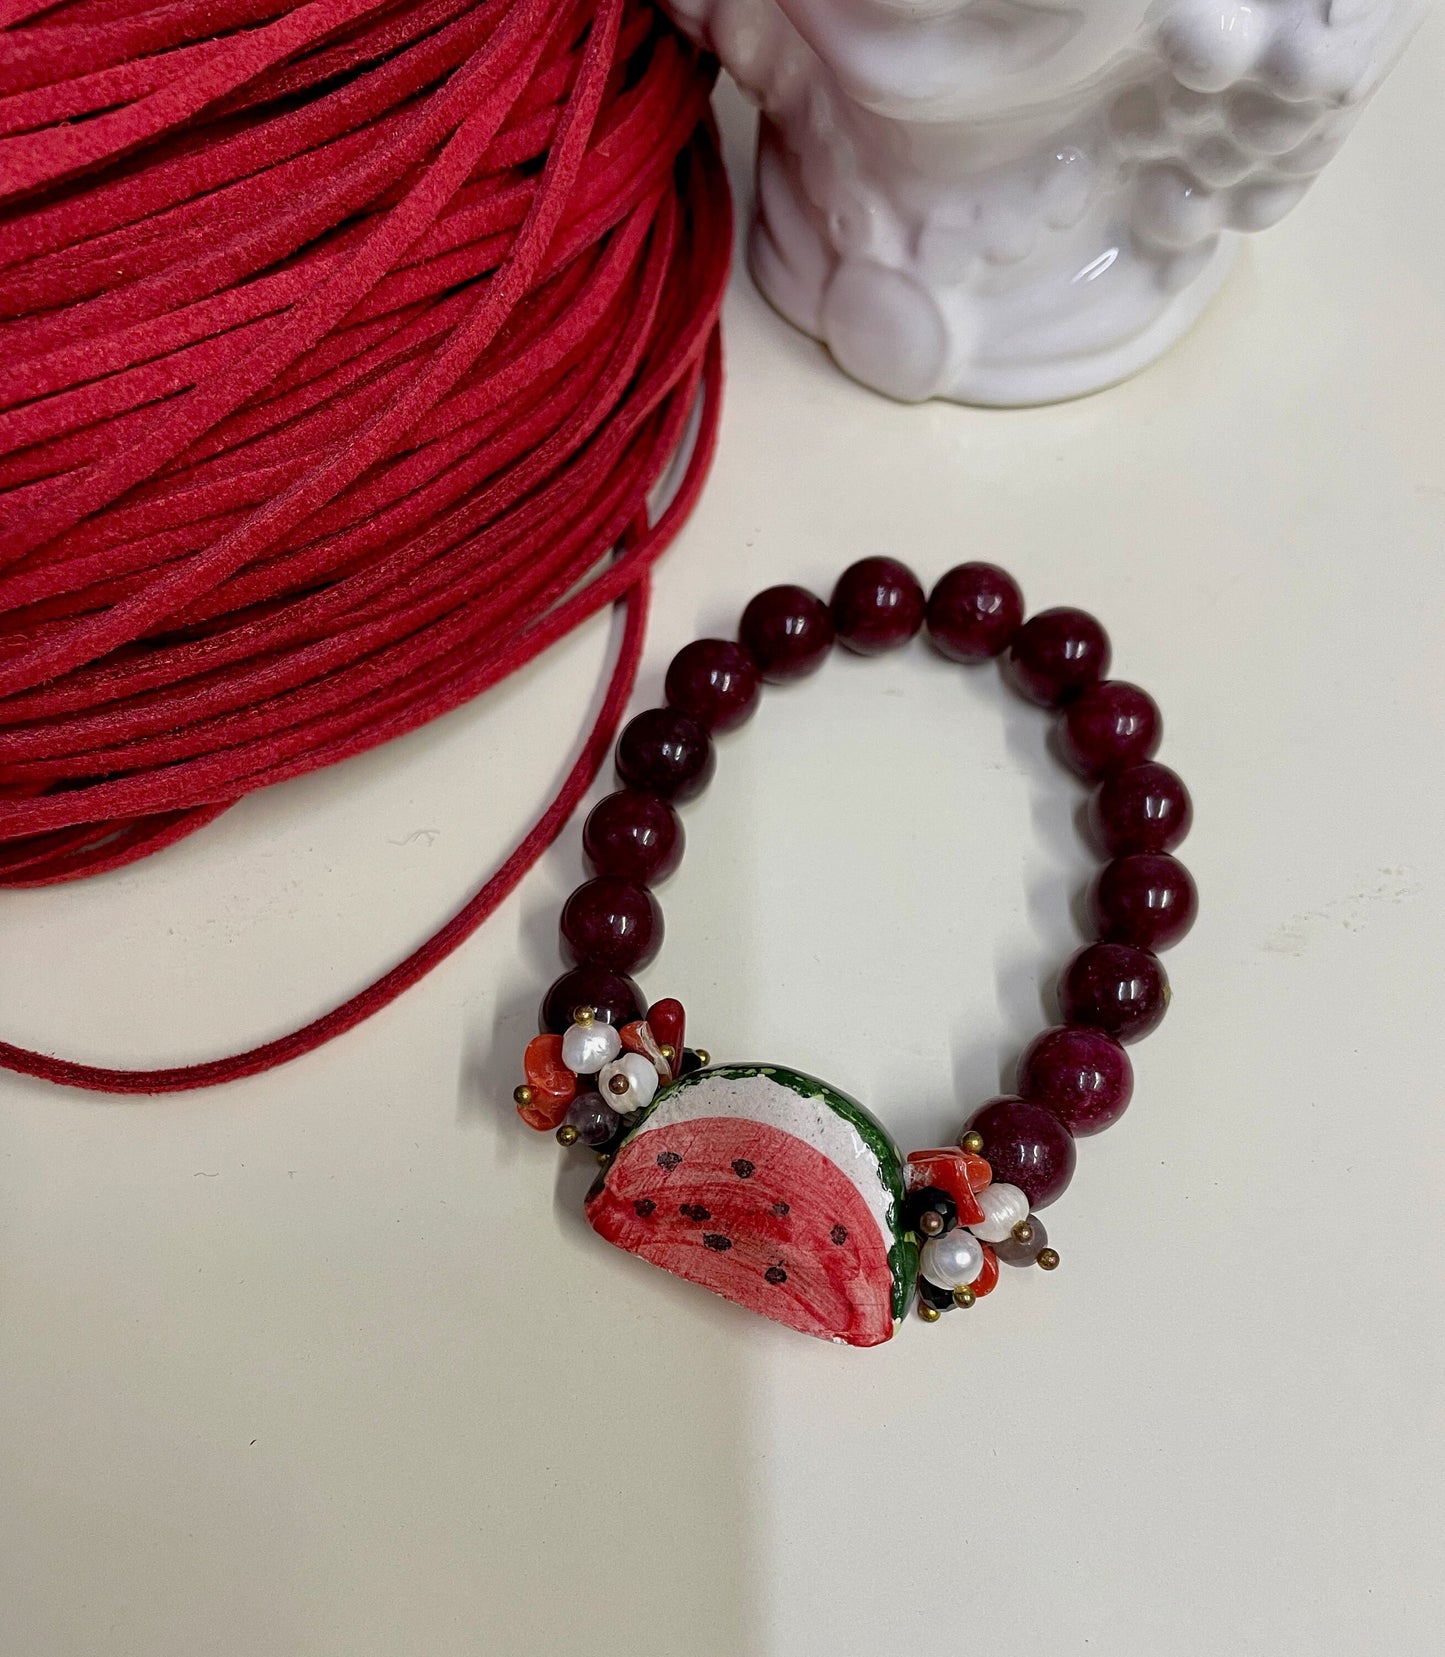 Bracciale Sikelia, Bracciale elastico, perle di agata rossa, cocomero in ceramica di Caltagirone. regalo ragazza.